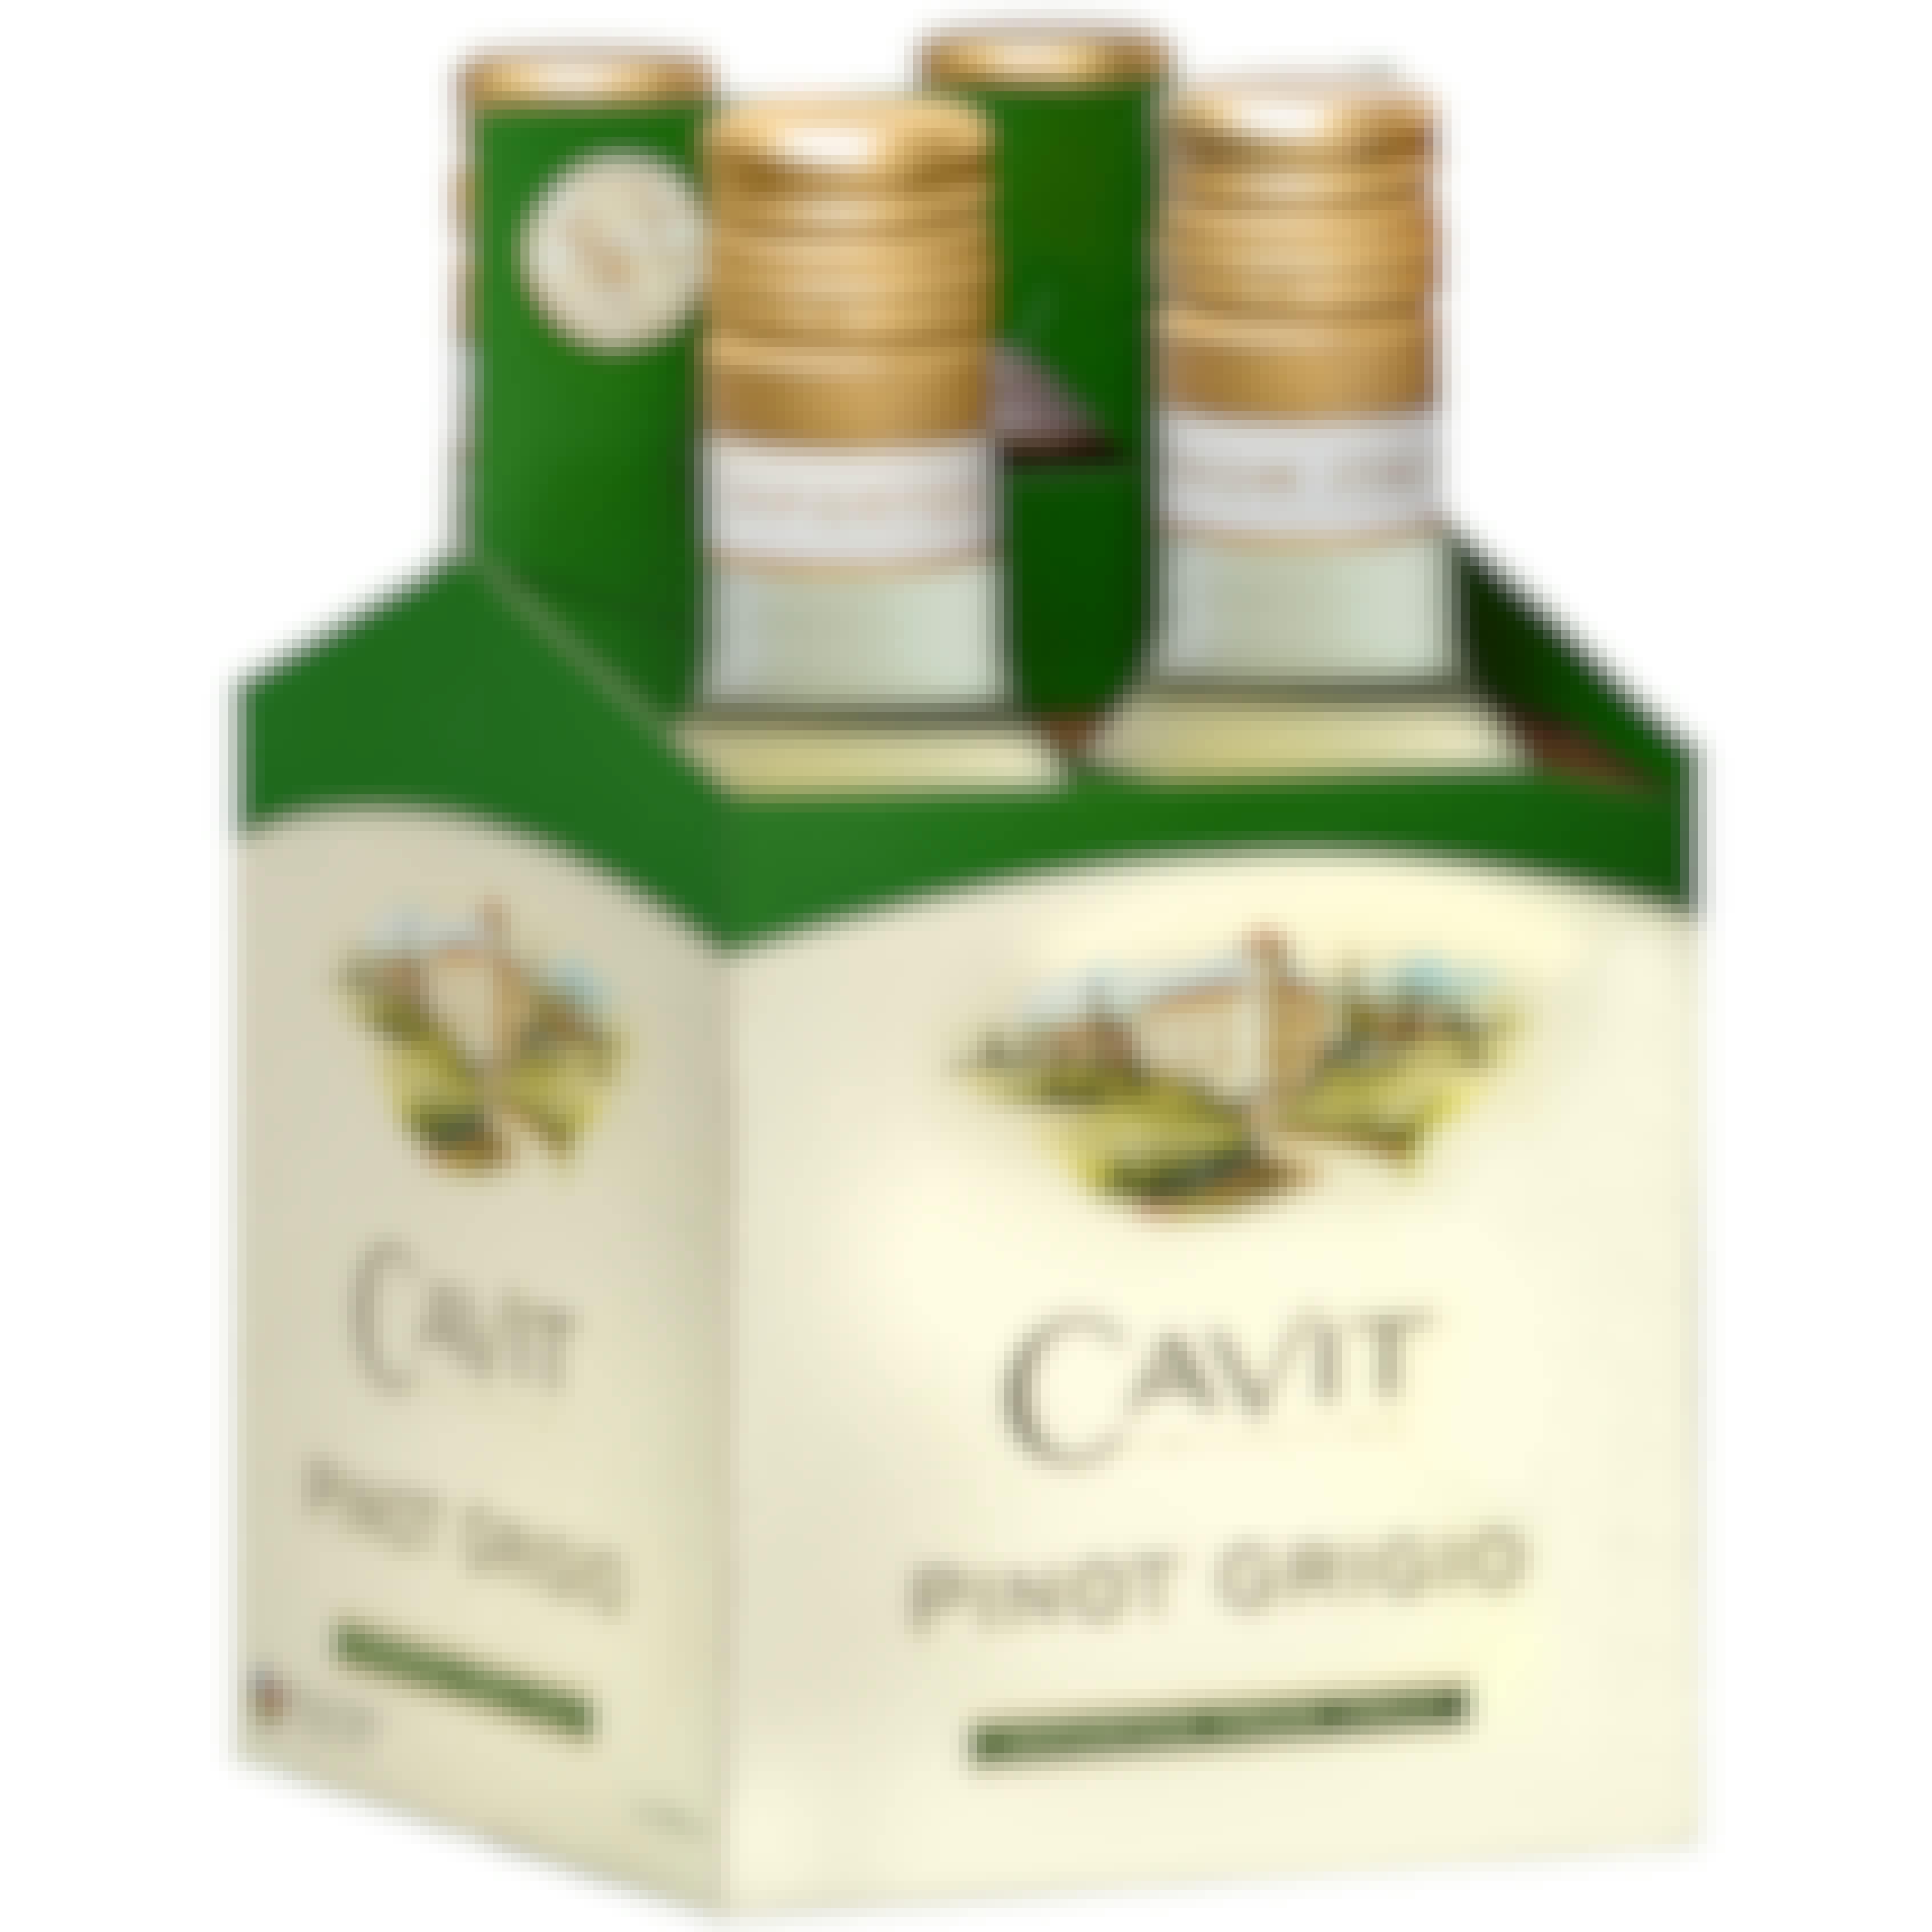 Cavit Pinot Grigio 2020 4 pack 187ml